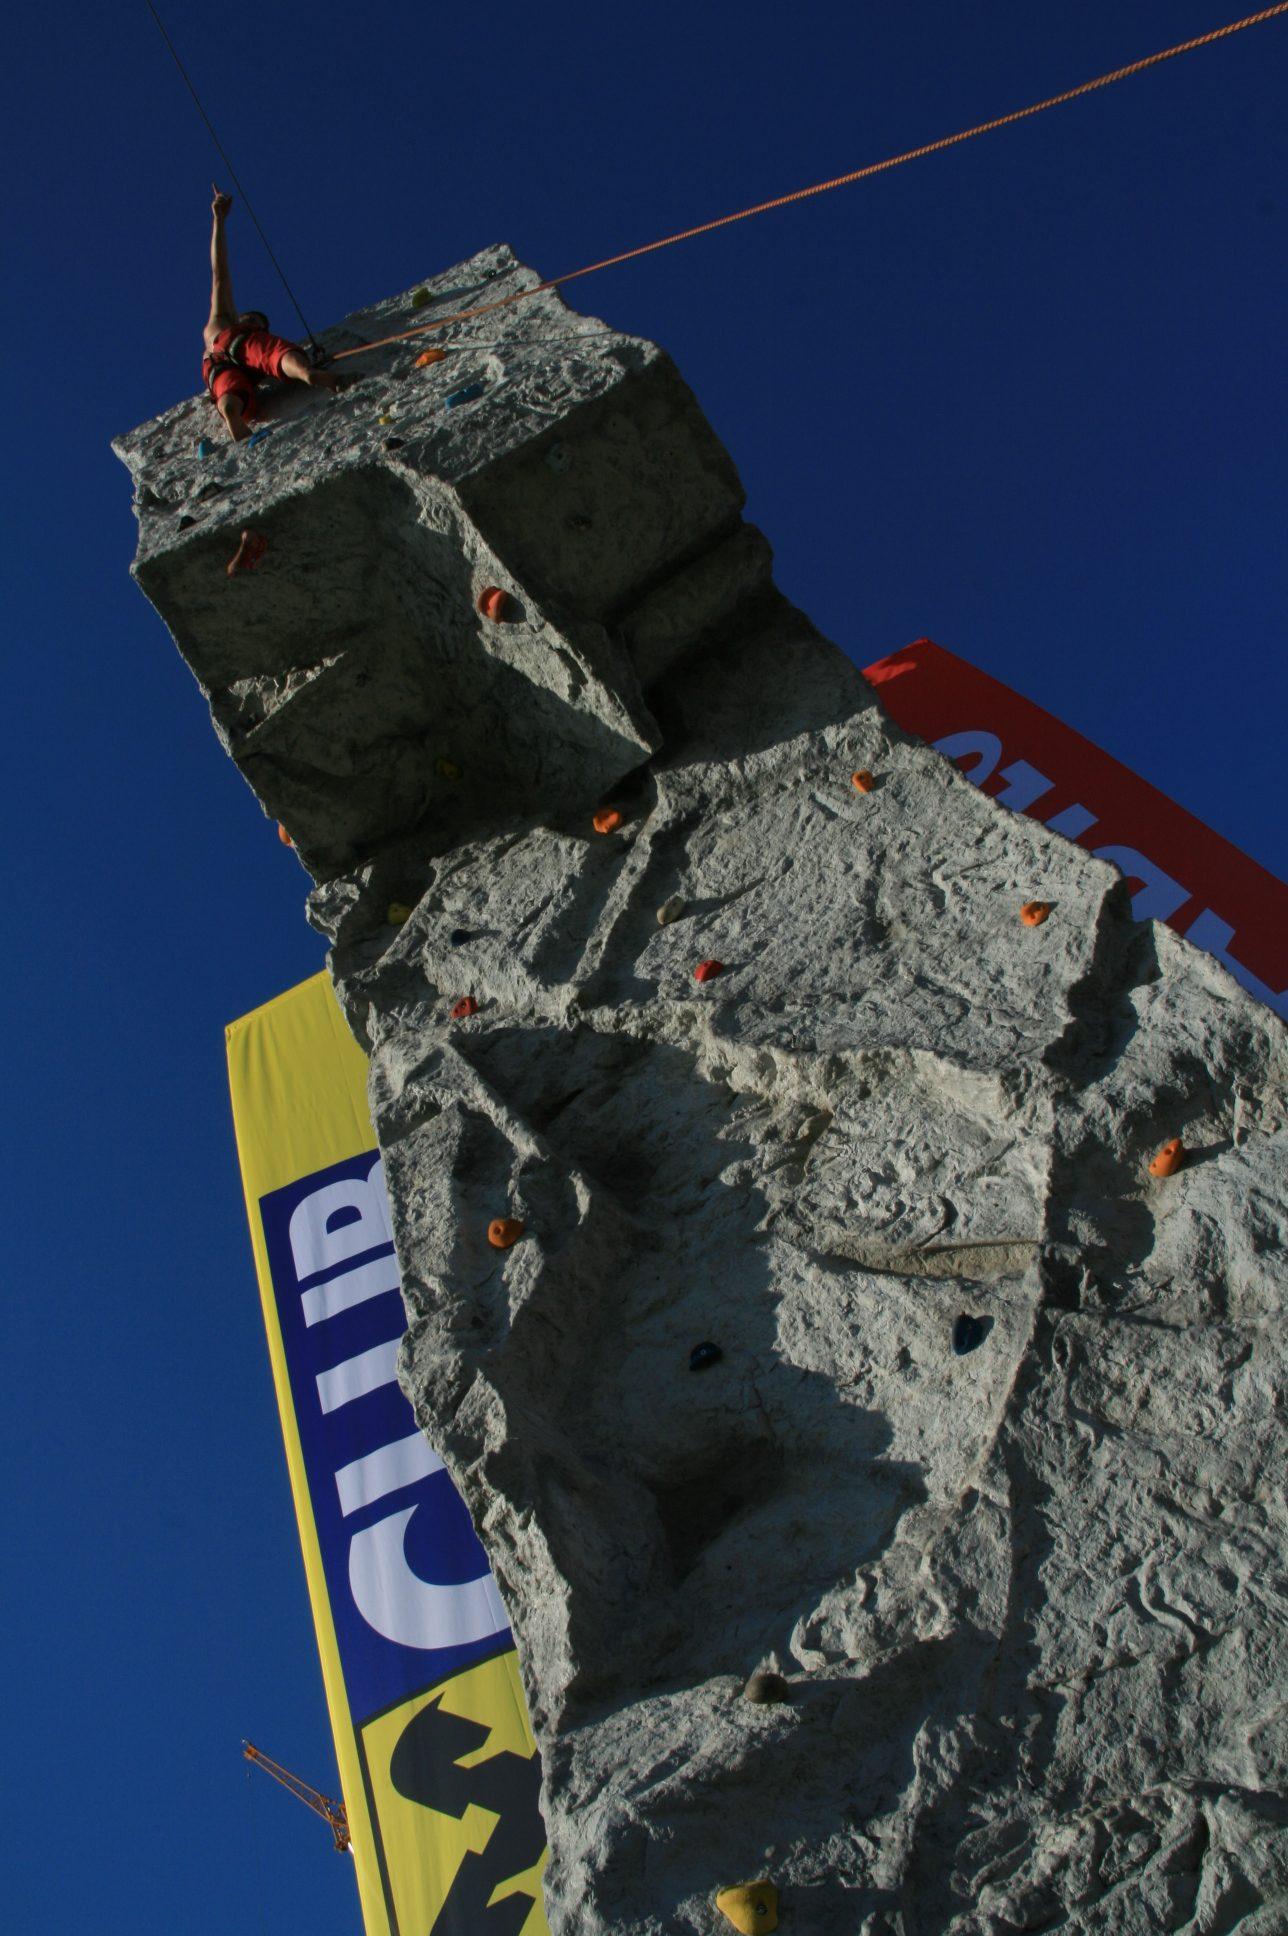 Spider Rock 3 climbing tower an the winner is!